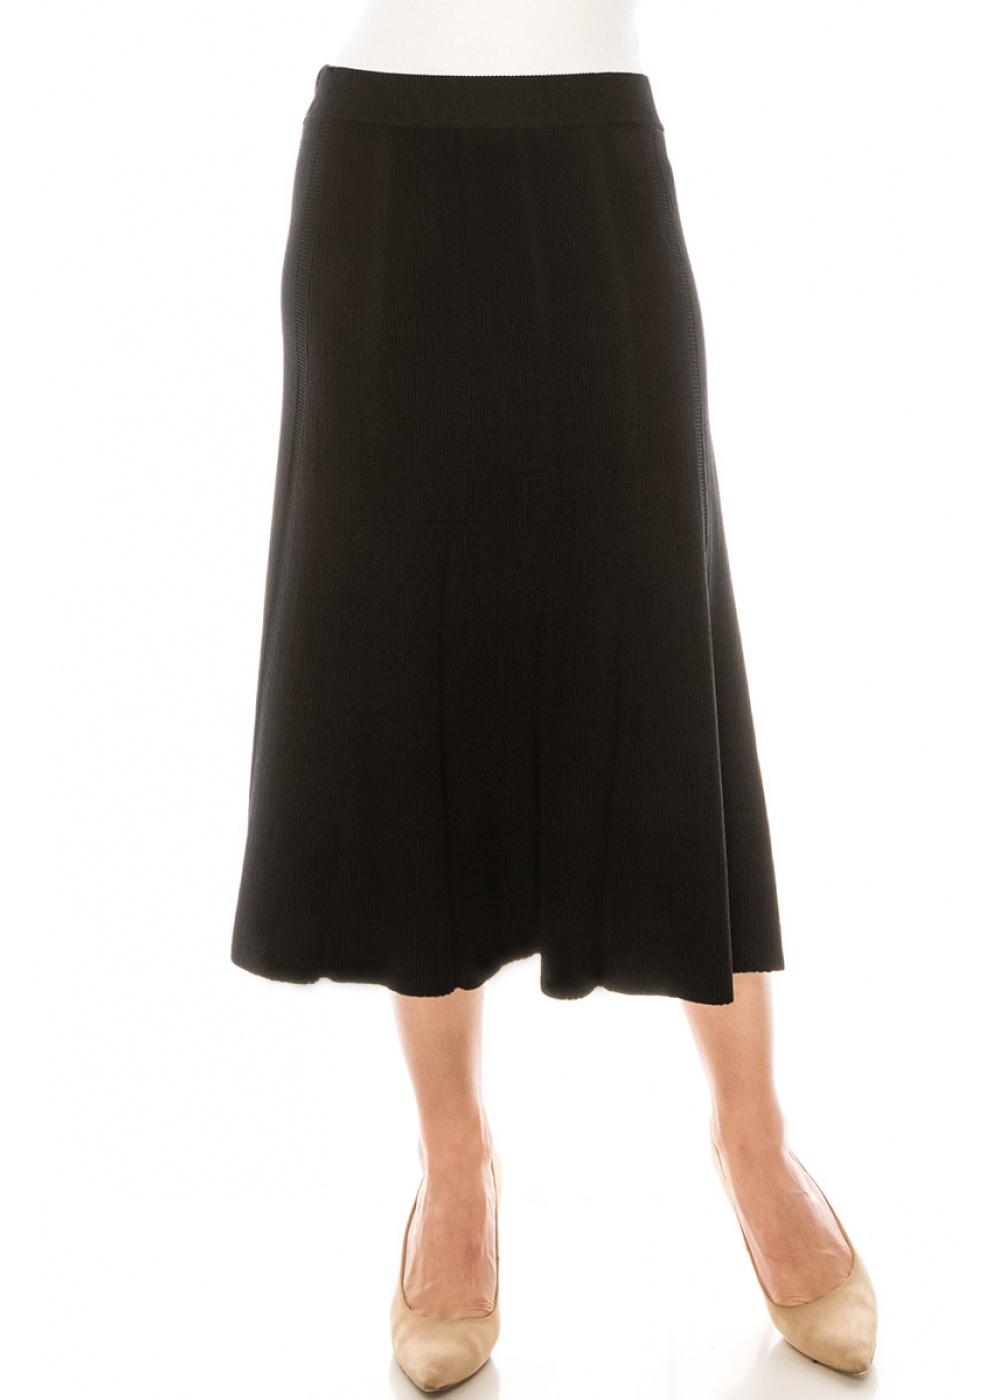 Skirt SKA155 Black